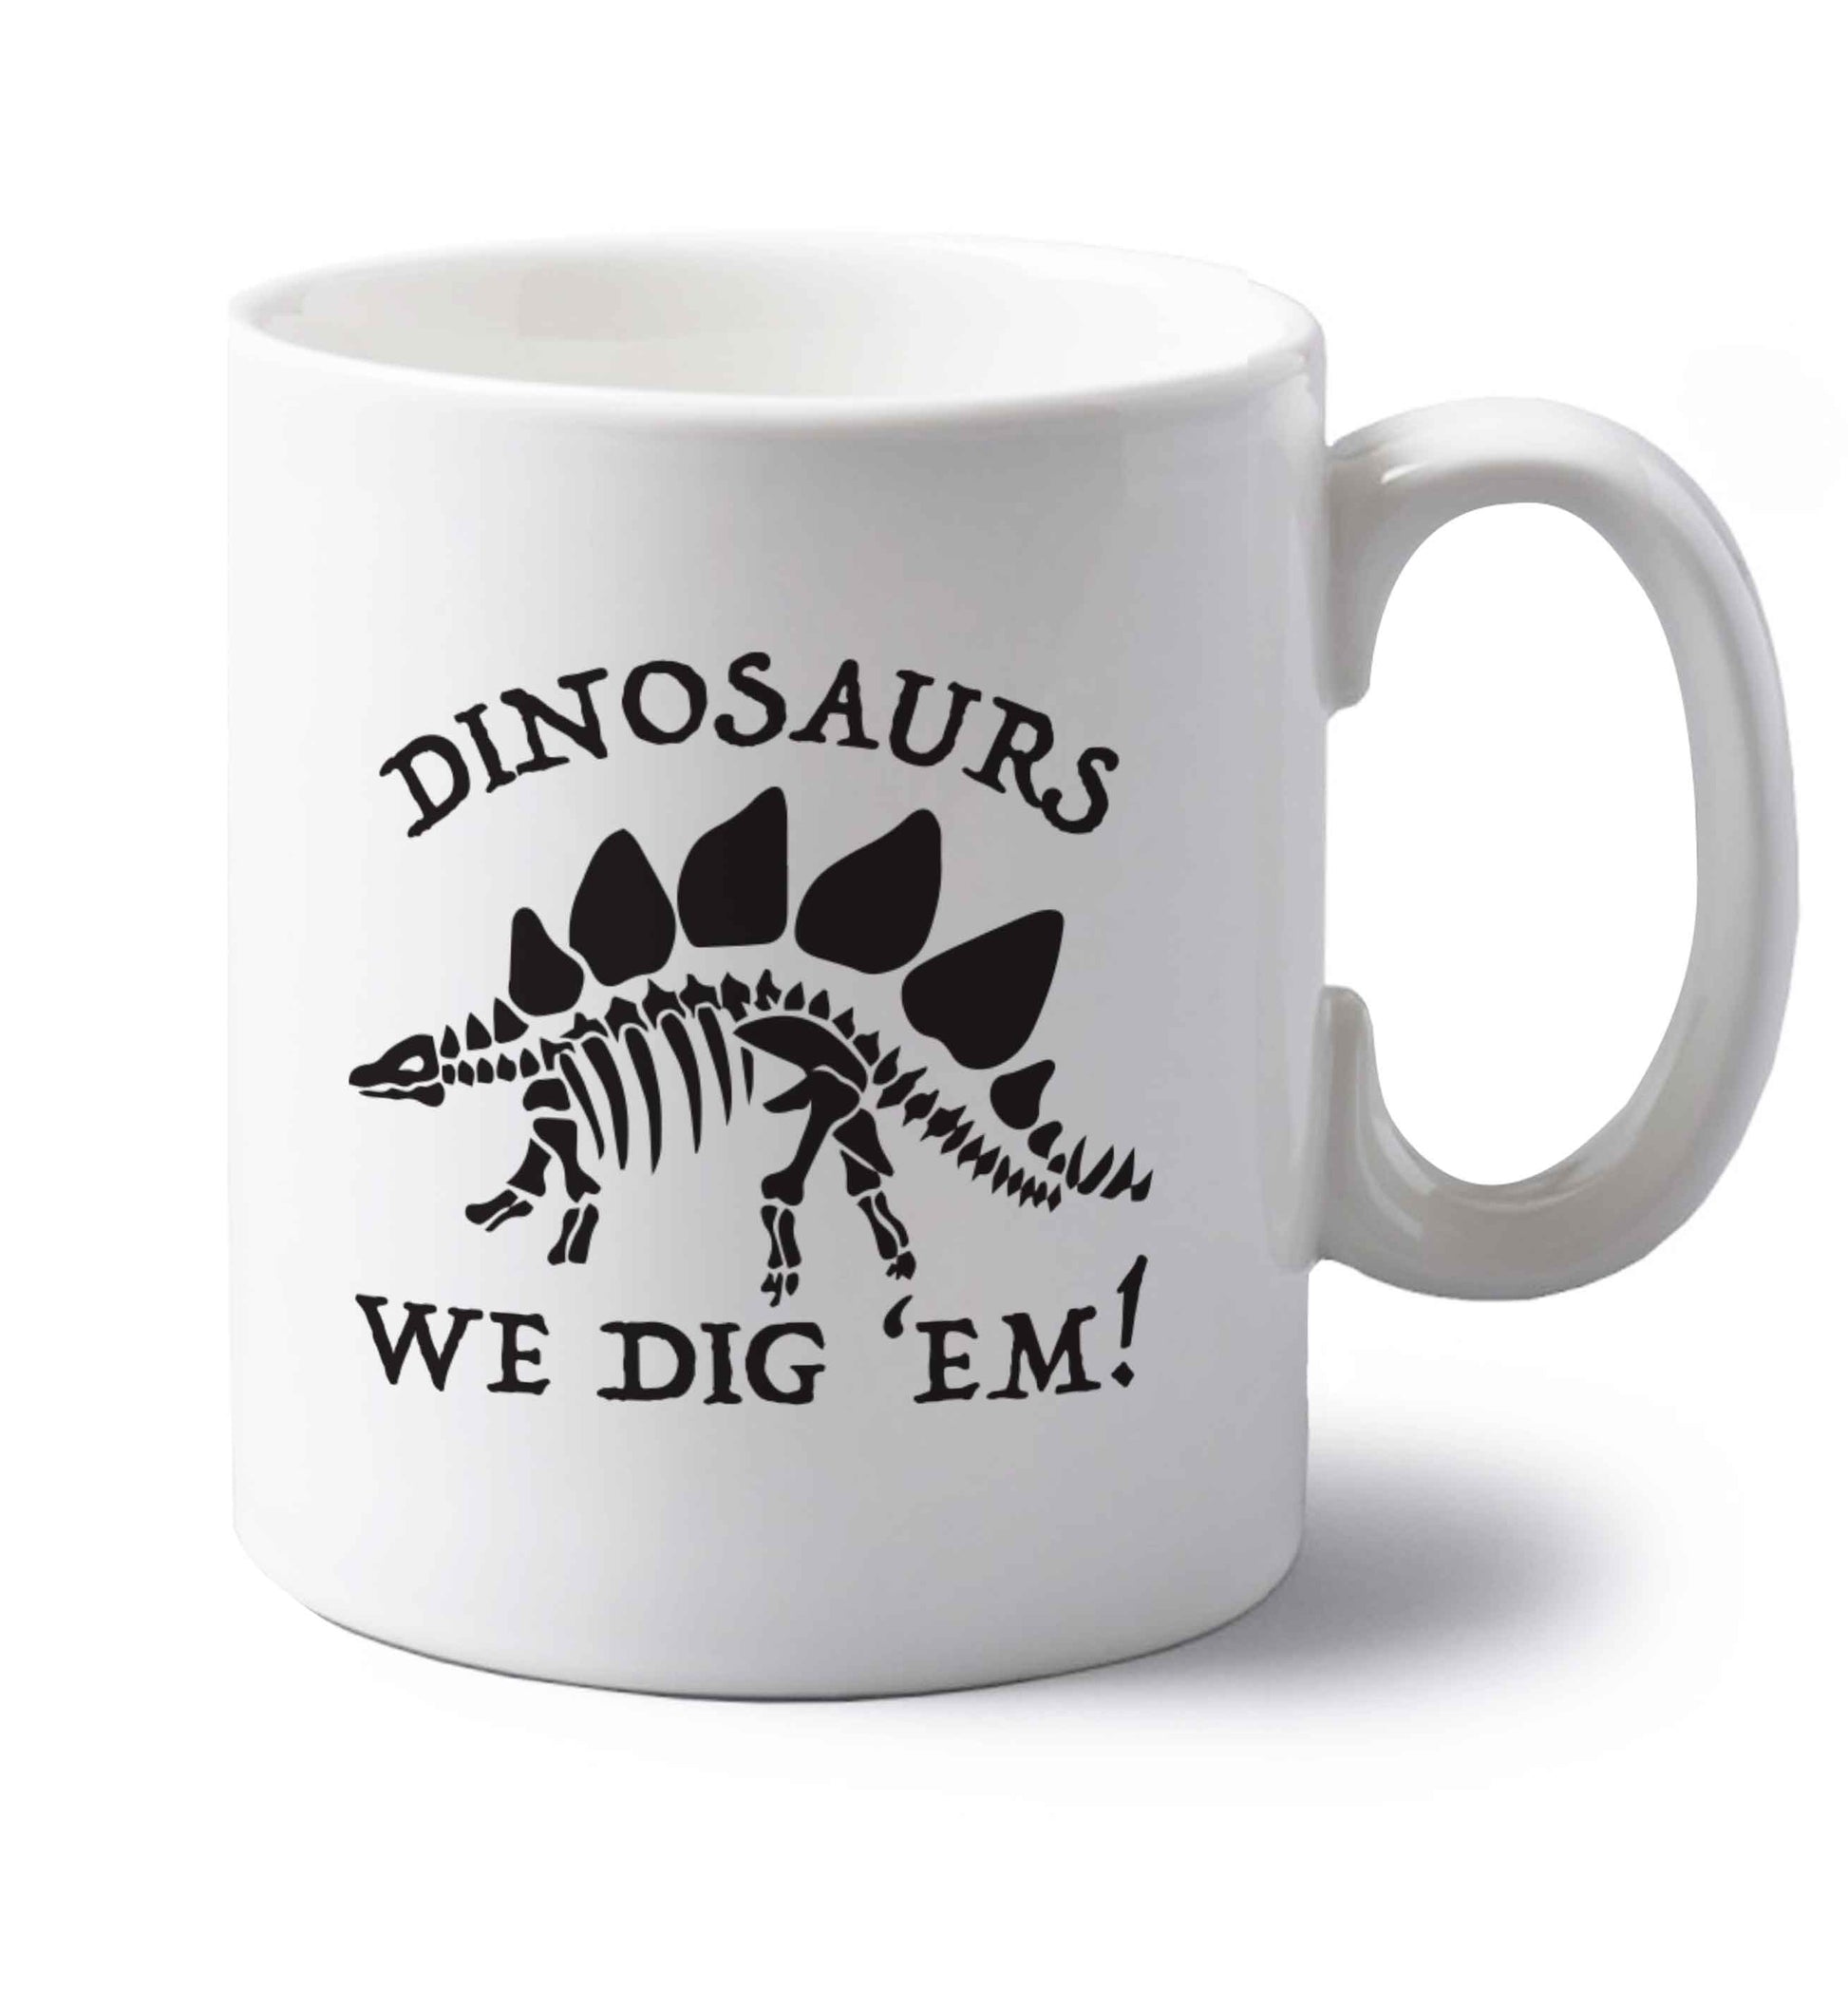 Dinosaurs we dig 'em! left handed white ceramic mug 